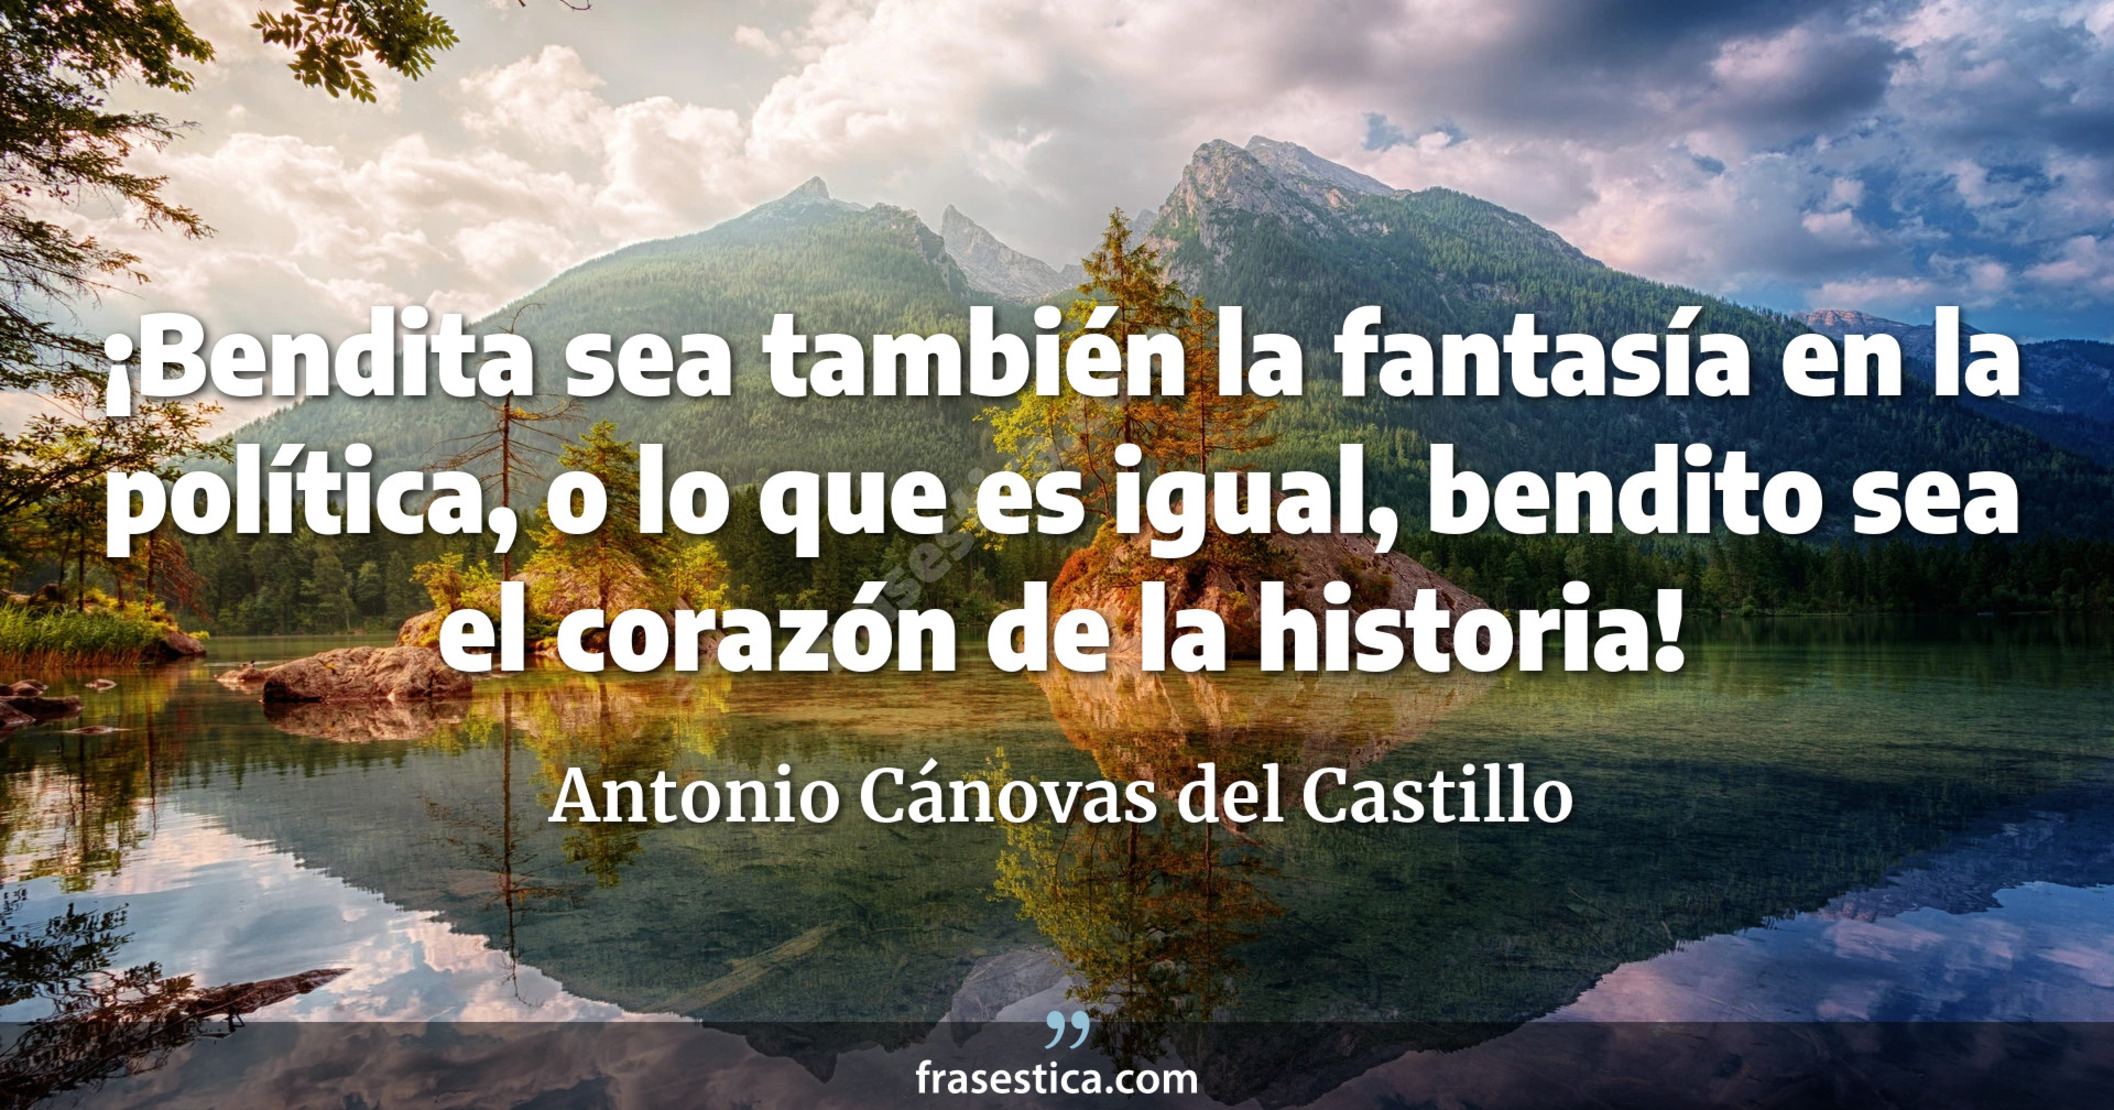 ¡Bendita sea también la fantasía en la política, o lo que es igual, bendito sea el corazón de la historia! - Antonio Cánovas del Castillo